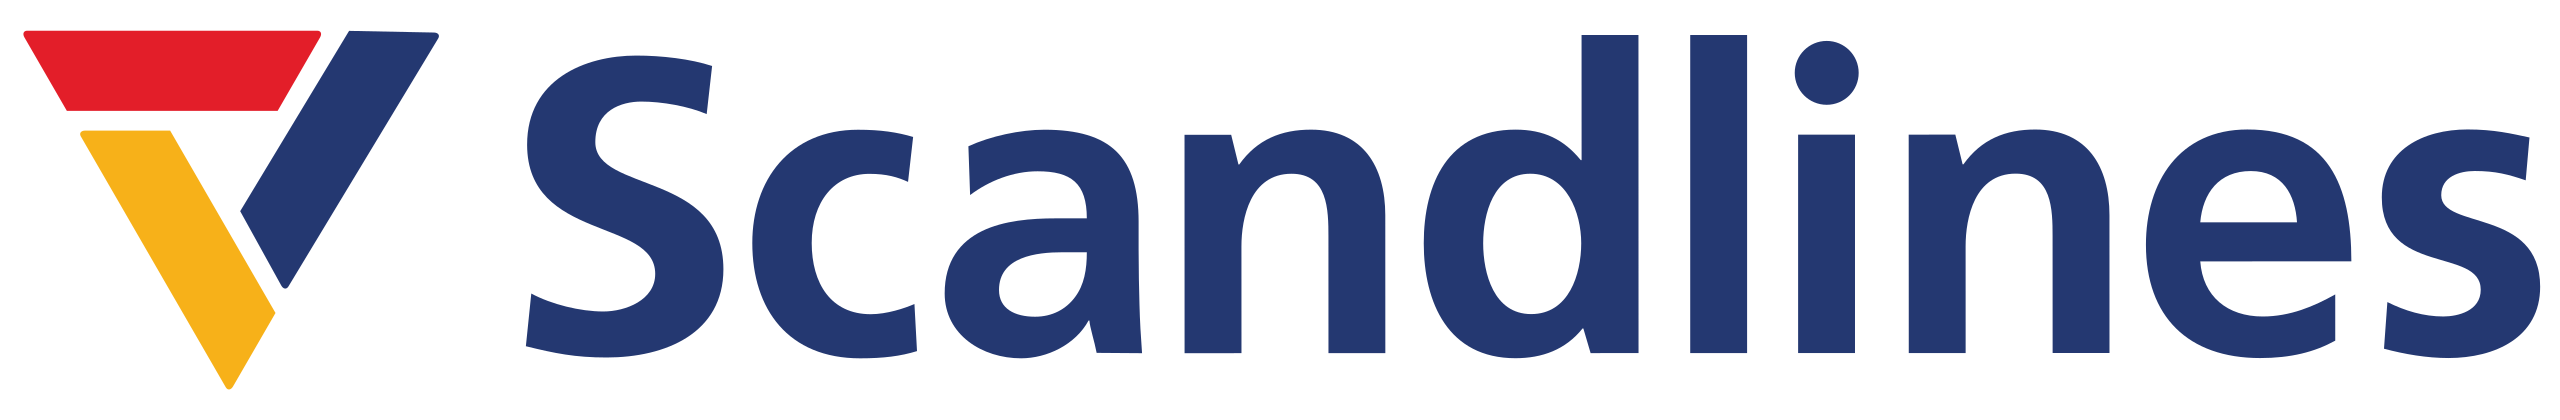 Scandlines_logo.svg